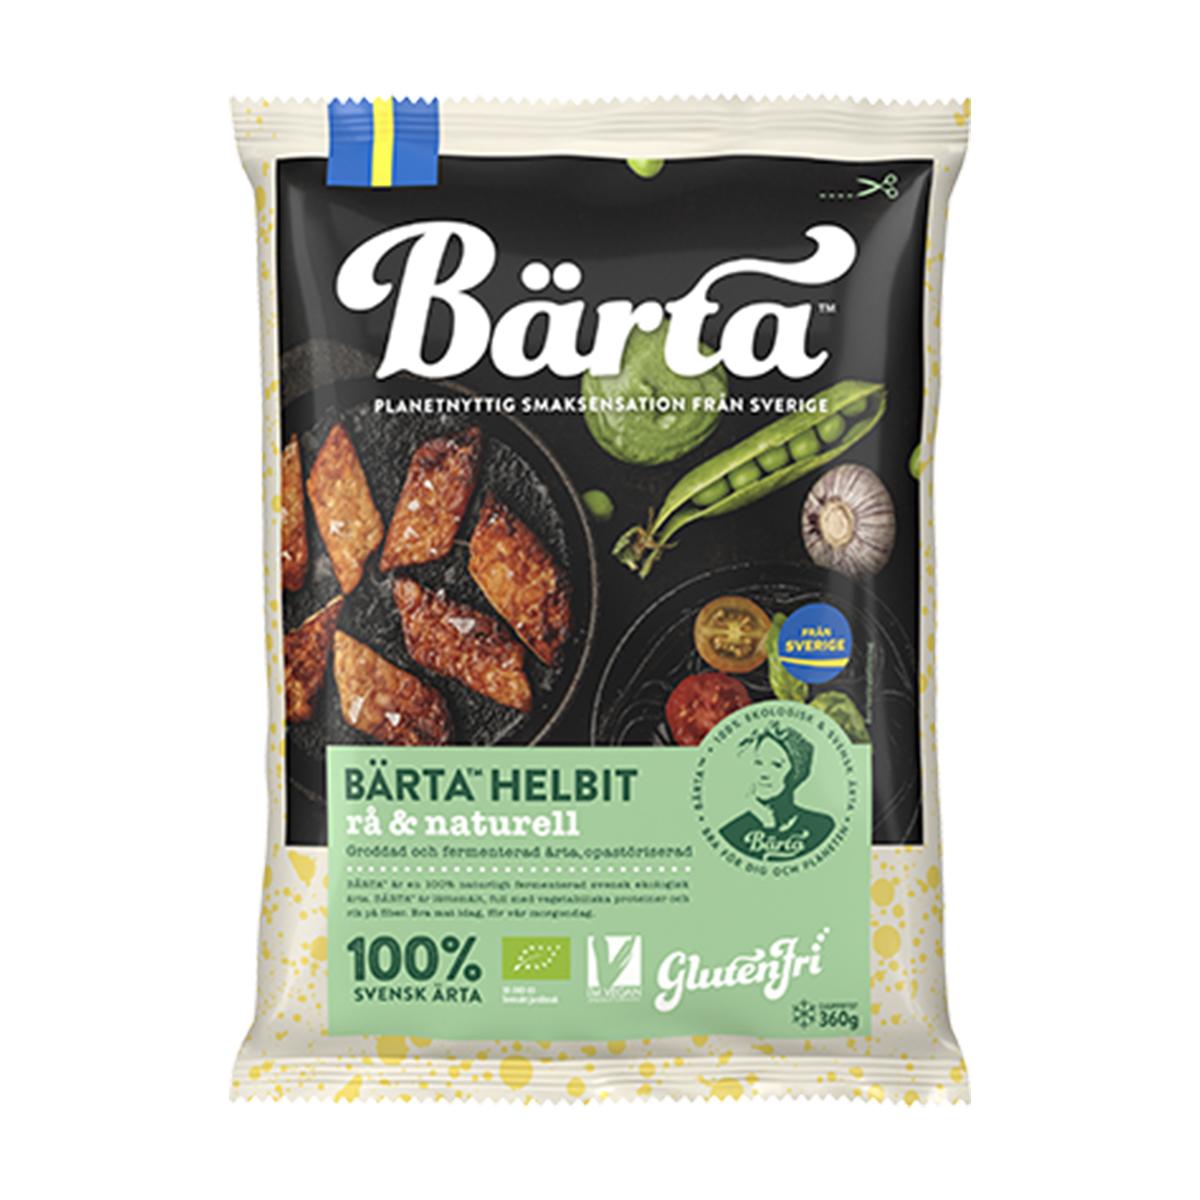 BÄRTA's Bärta® helbit raw & natural '